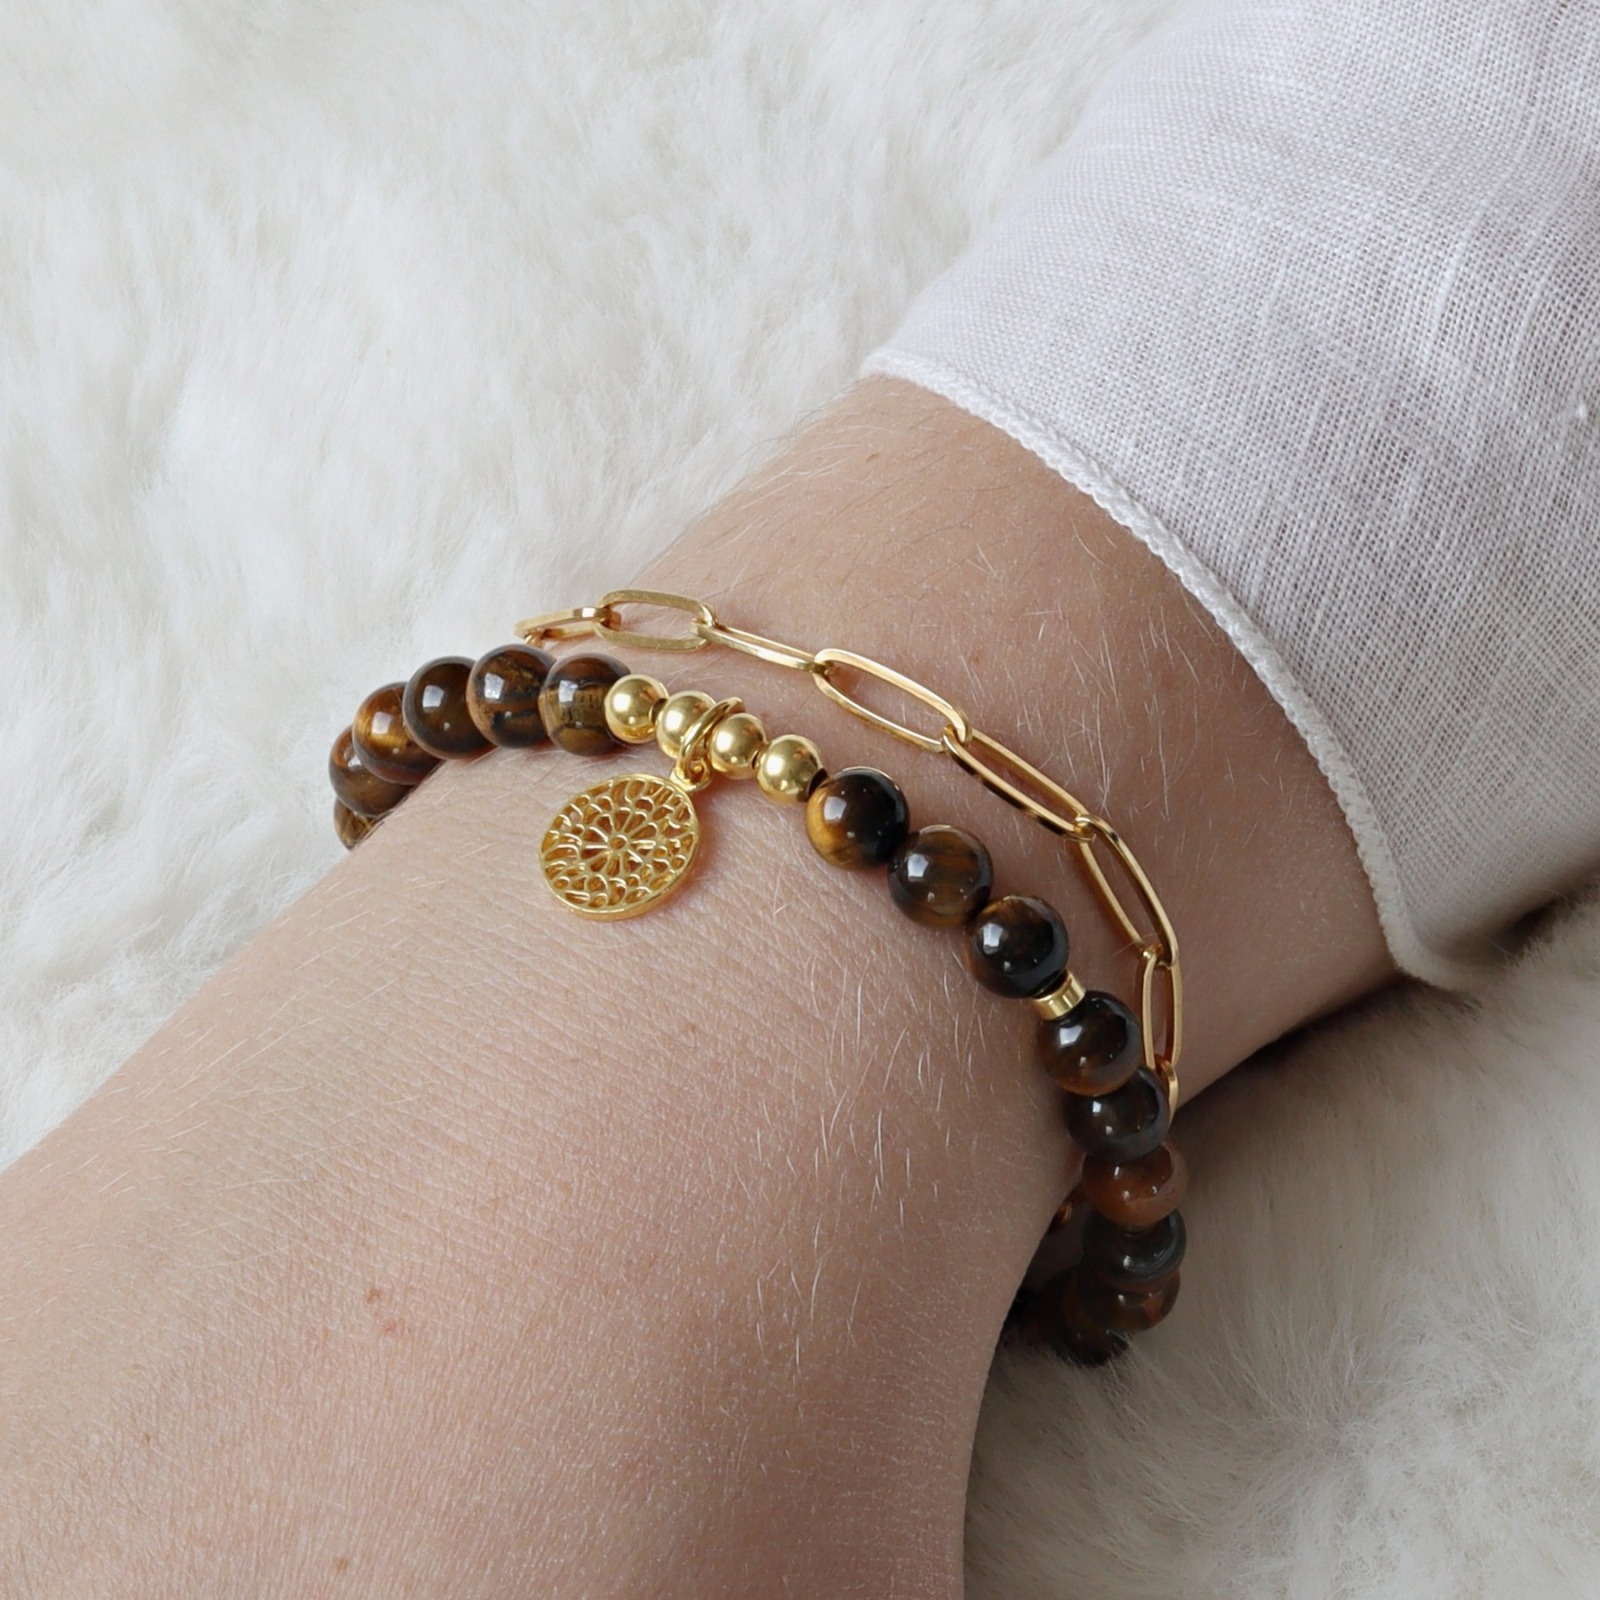 Armband Tigerauge mit Mandala, 725er Silber oder vergoldet, perfektes Geschenk für Frauen 6